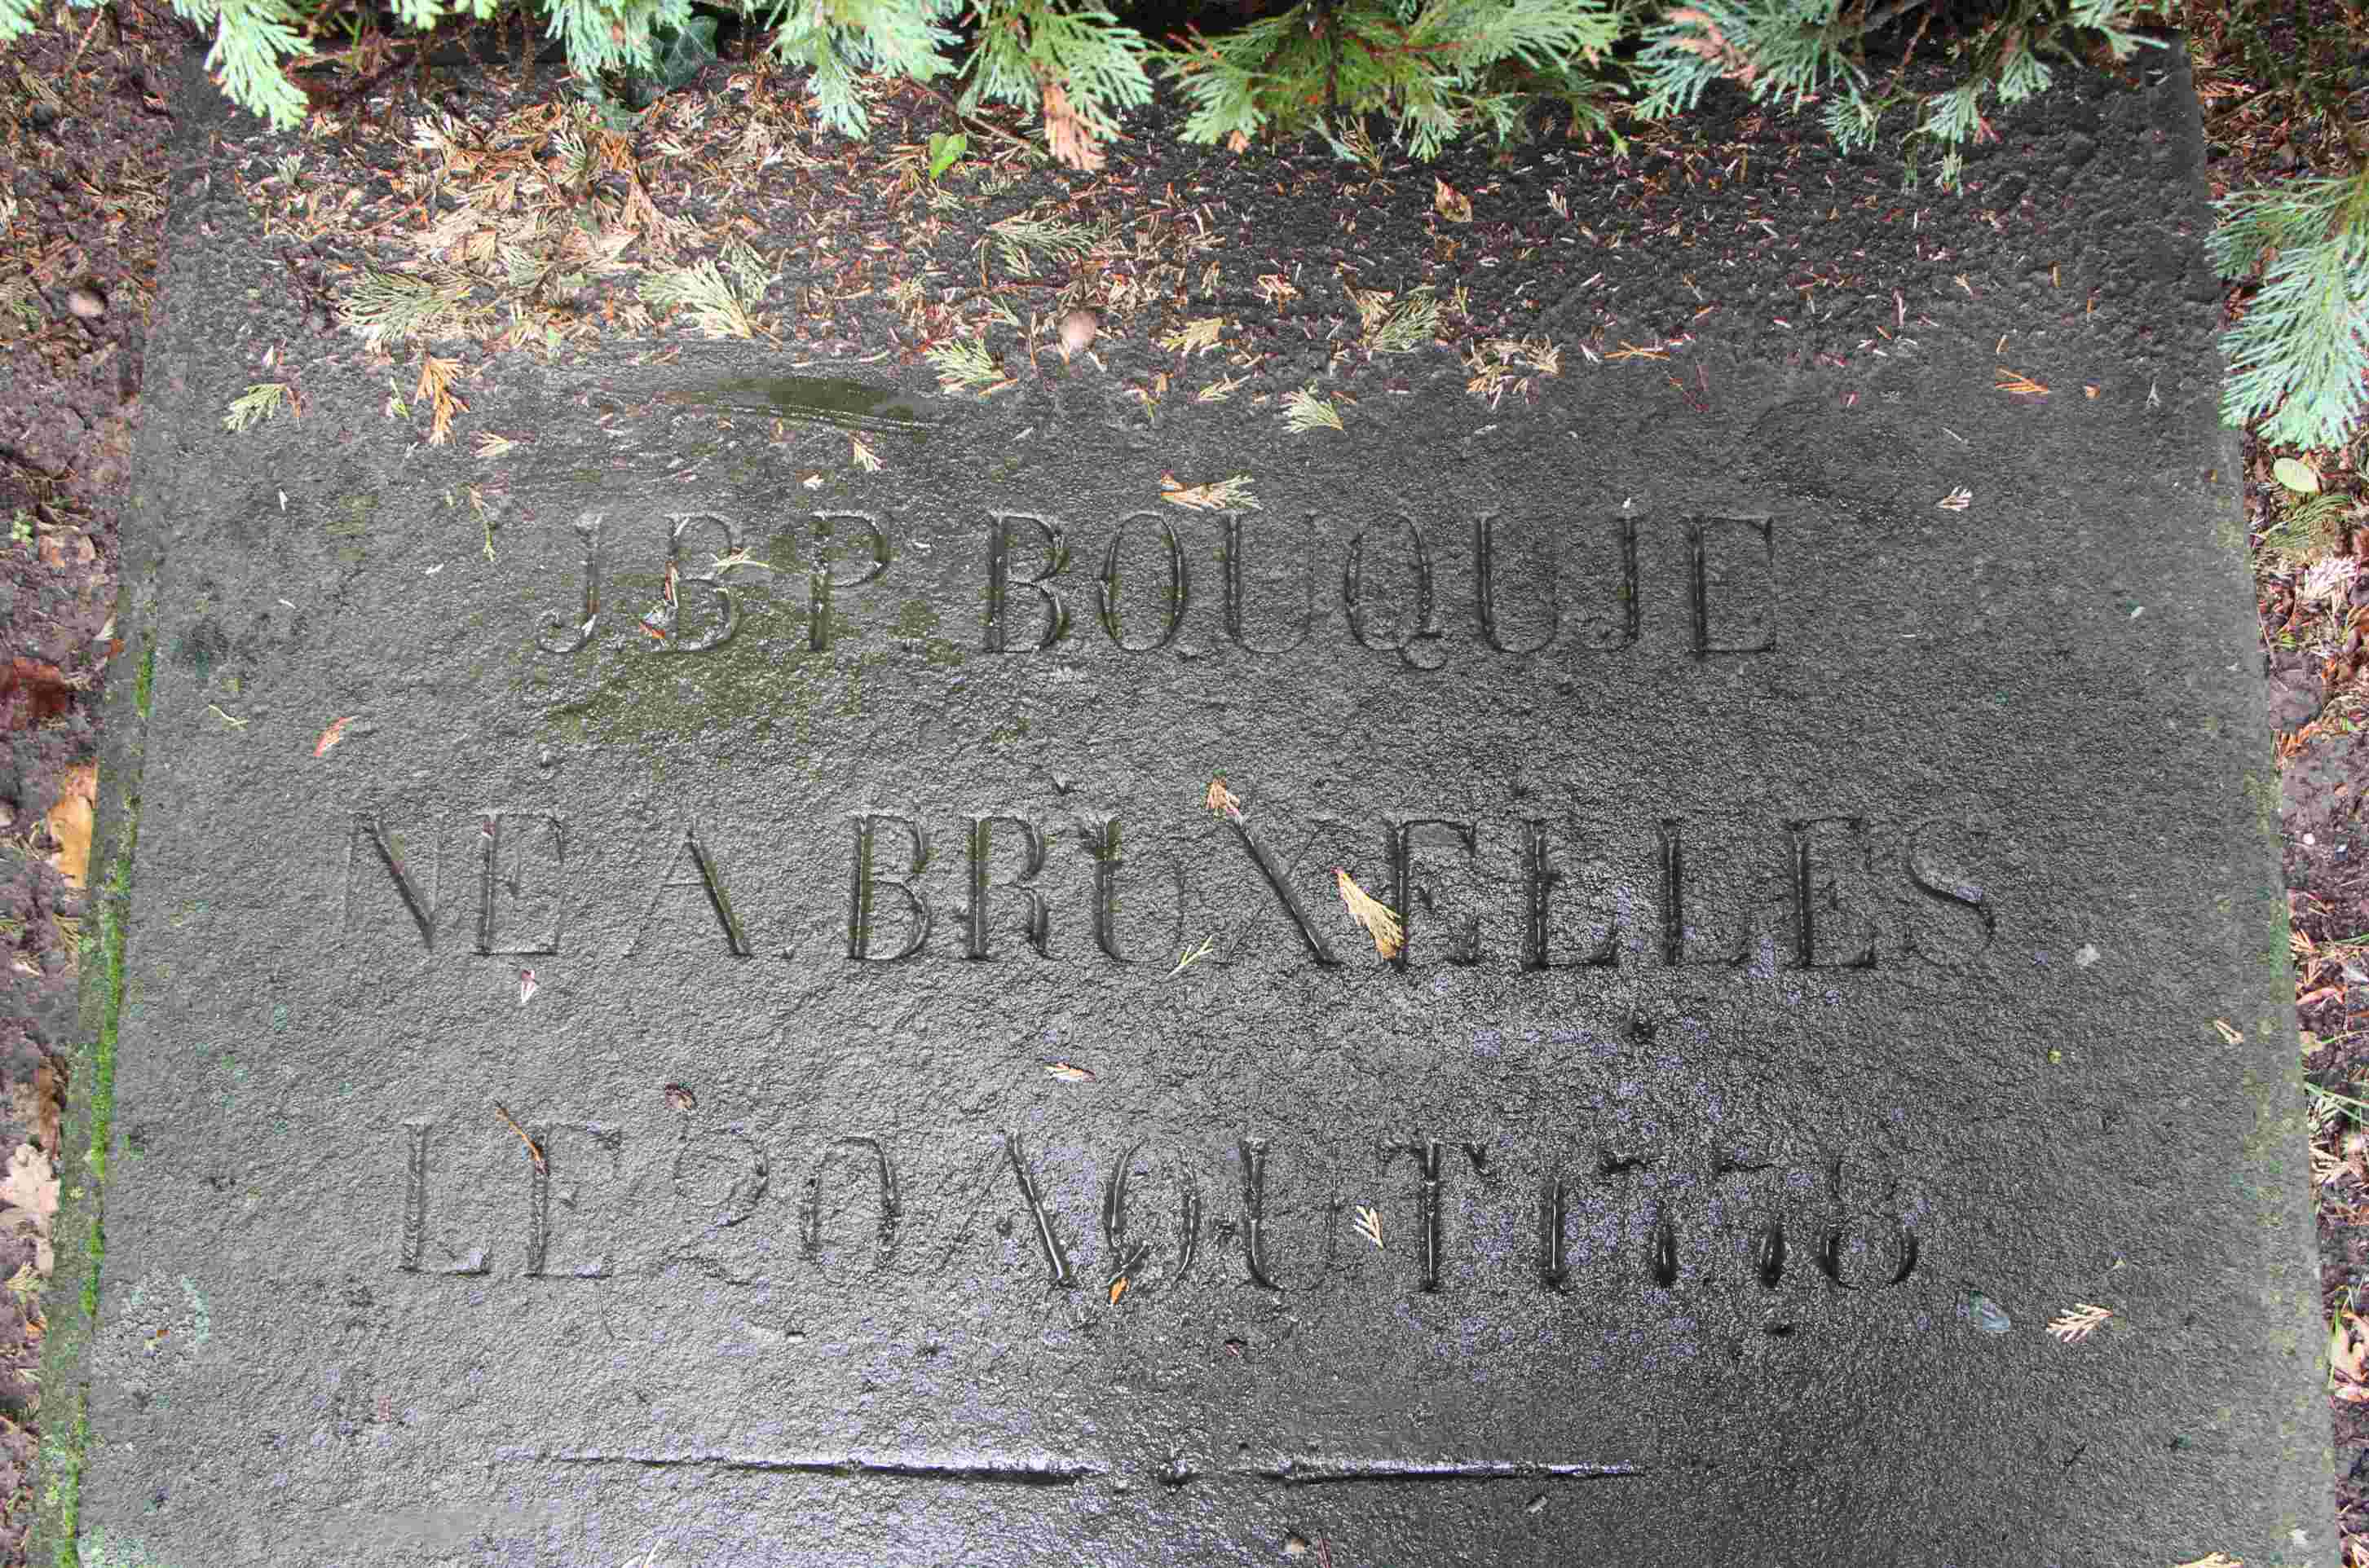 Detail van grafsteen nr. 1 op de r.-k. begraafplaats te Eibergen. De tekst luidt: J.B.P. Bouquié, né a Bruxelles [geboren te Brussel], le 20 aout 1778. Hij overleed op 2 december 1855 te Eibergen. Deze grafsteen is net als de fabriek beslist monumentwaardig.